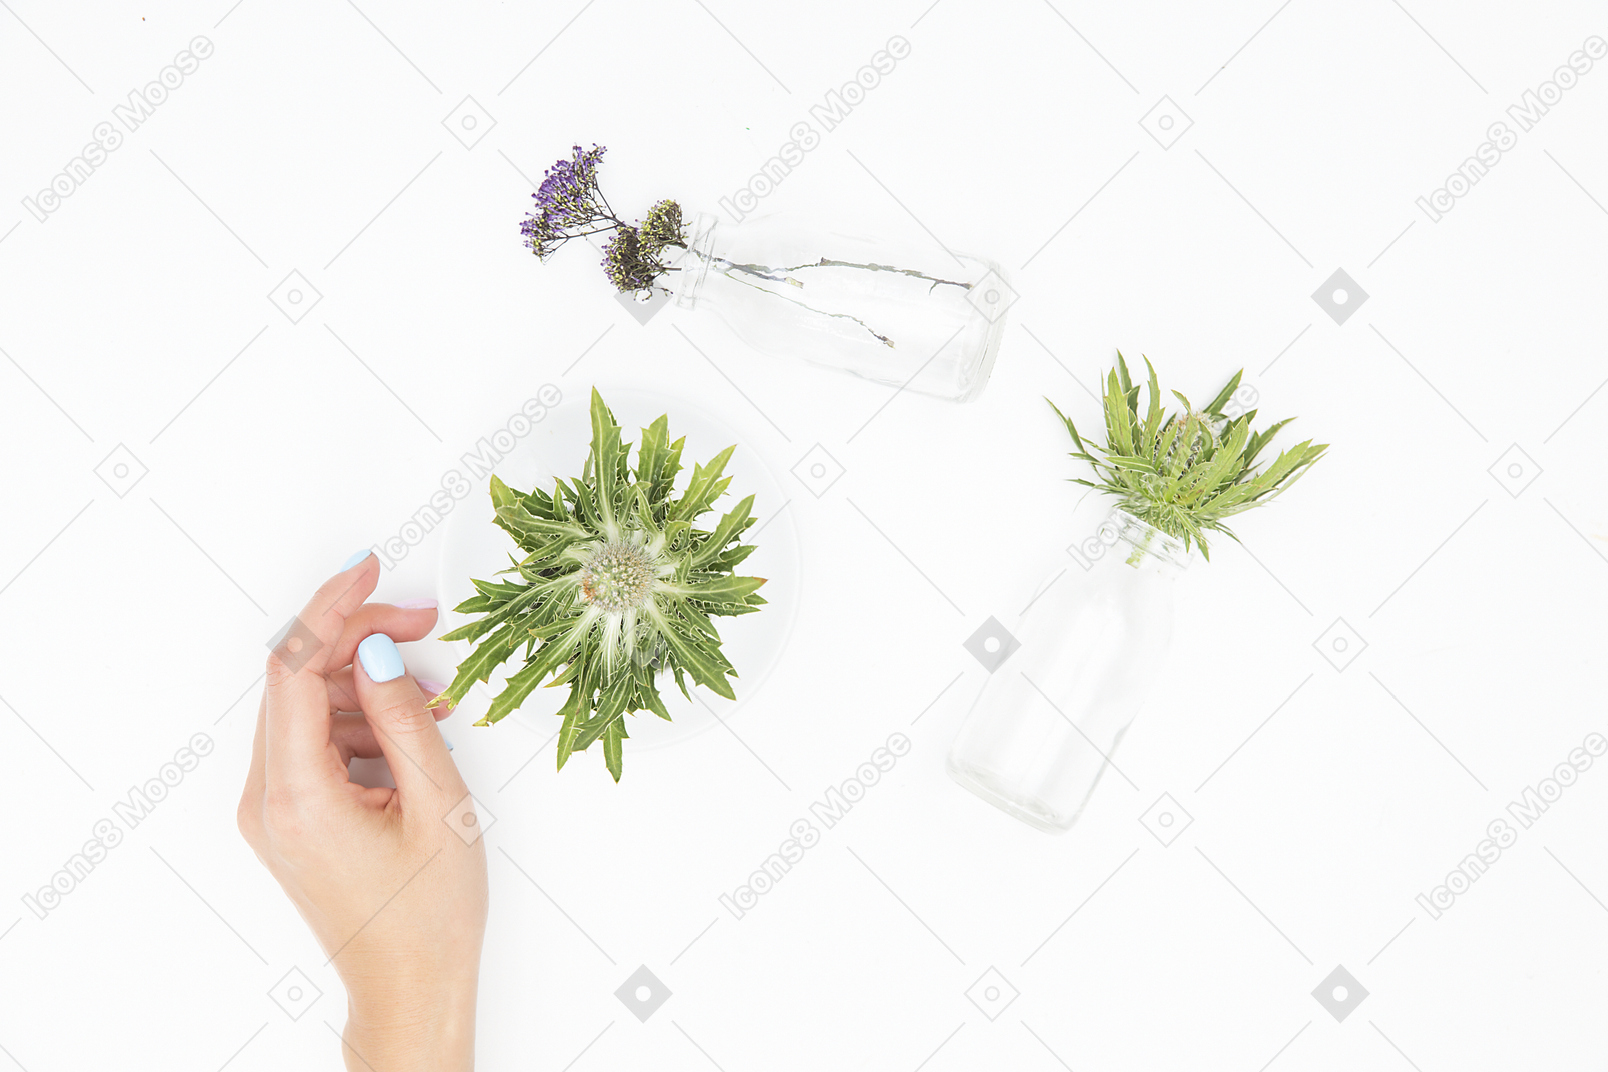 Mano femenina junto a los diferentes objetos de vidrio y plantas verdes.